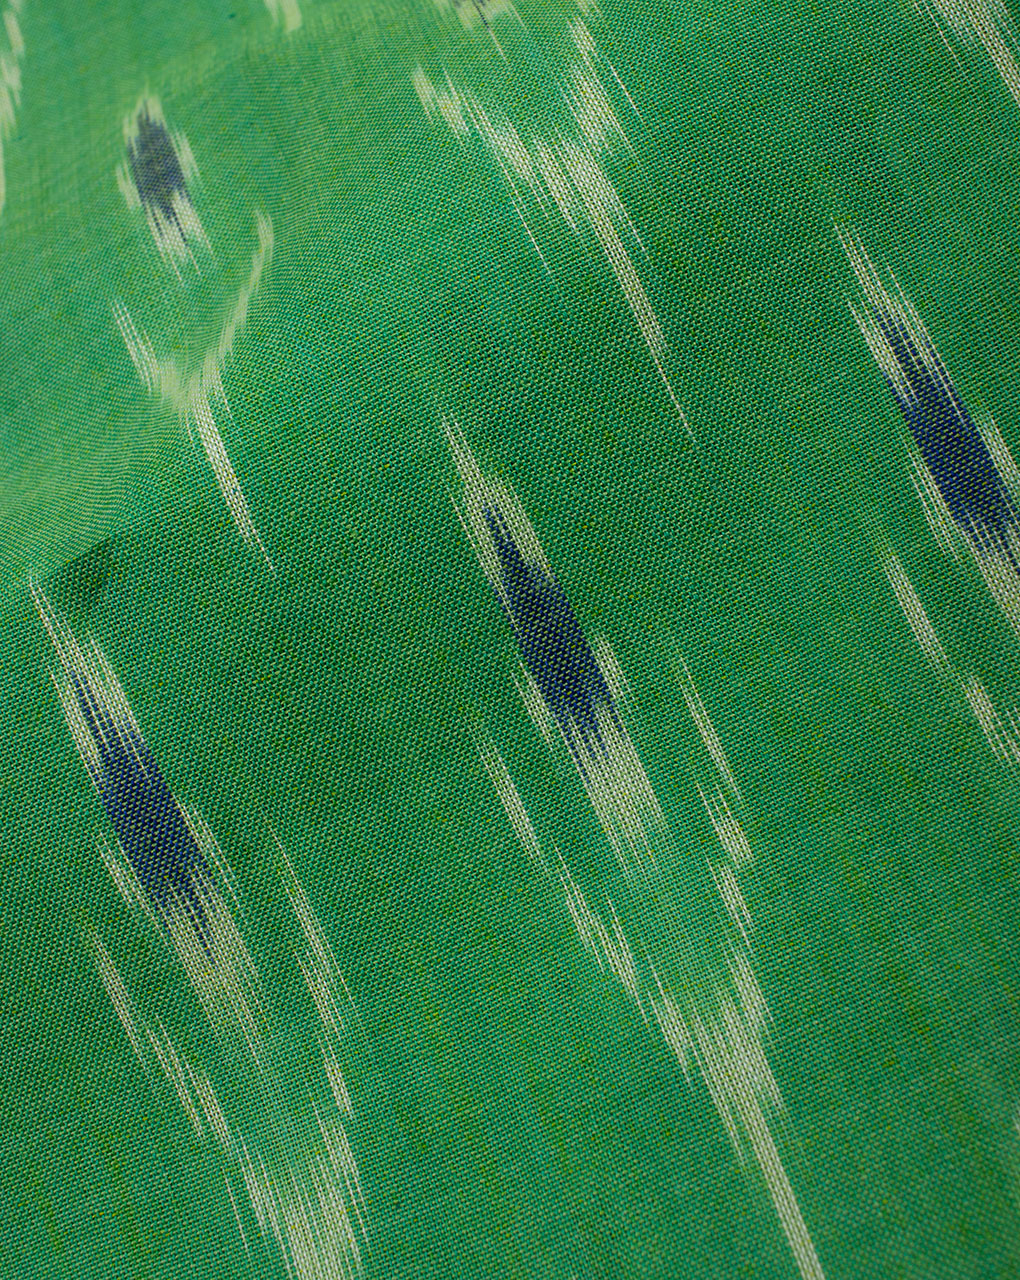 Green White Tree Pattern Woven Mercerized Ikat Cotton Fabric - Fabriclore.com